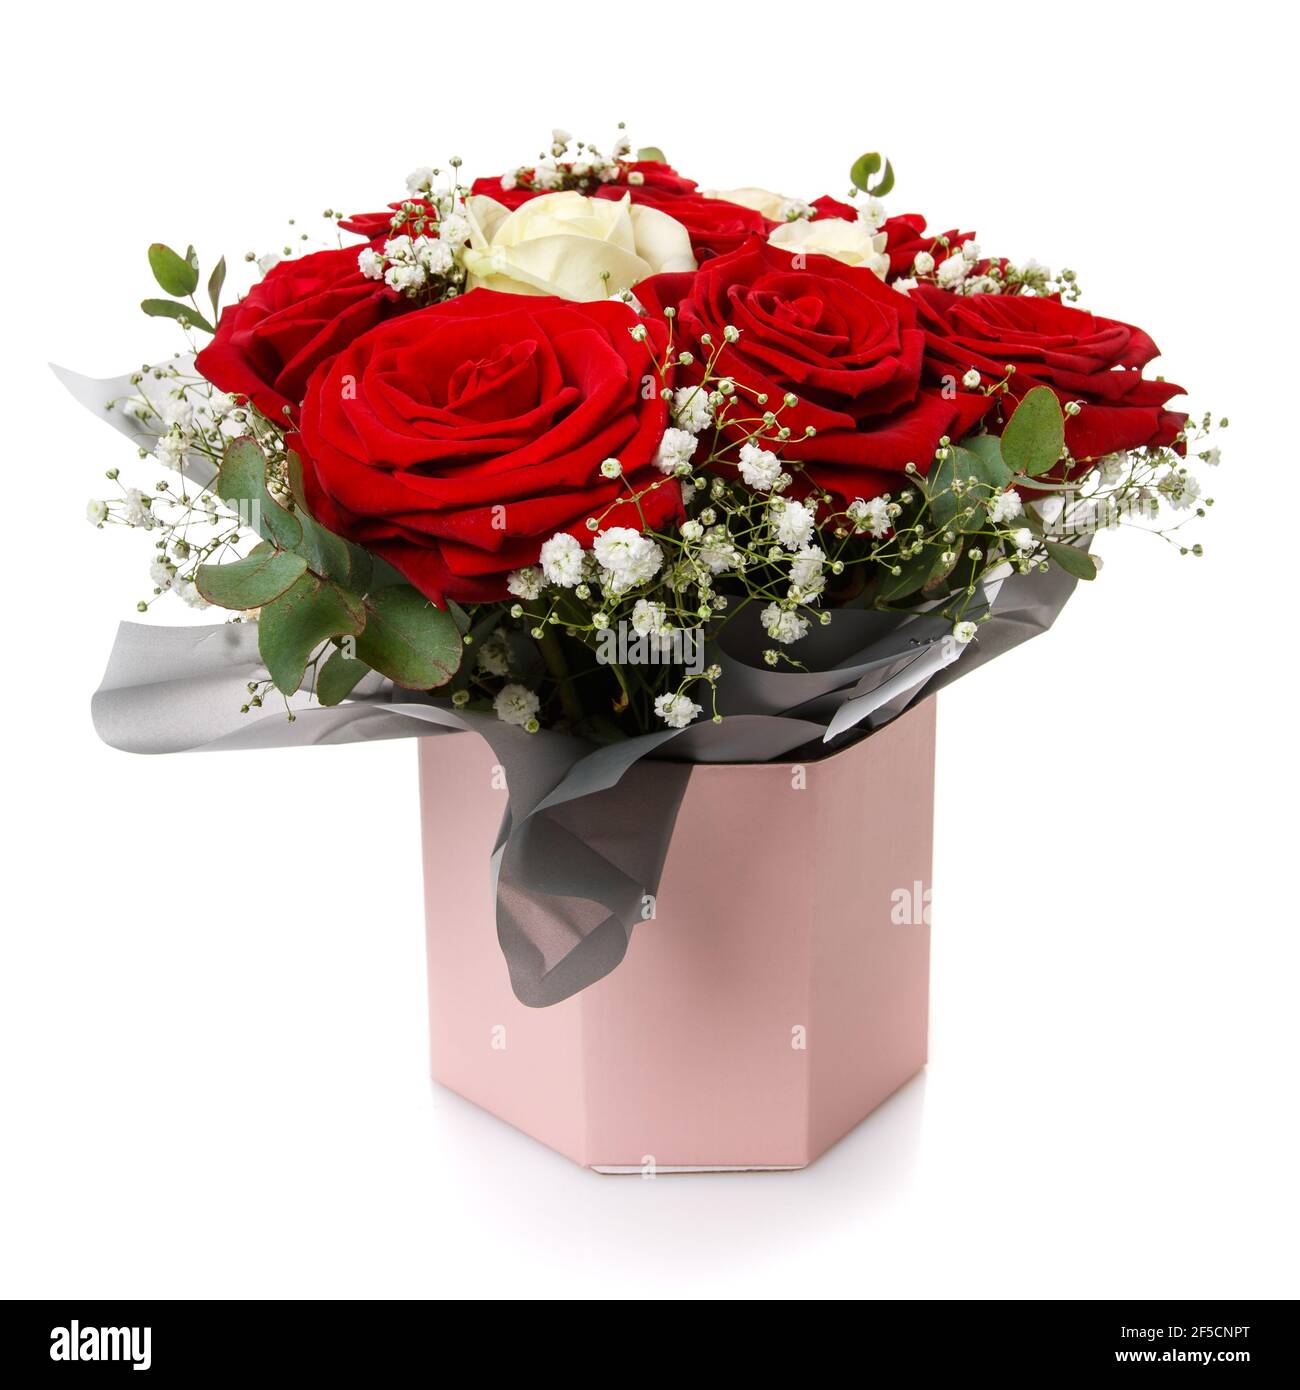 Bouquet de roses blanches et rouges Banque d'images détourées - Page 2 -  Alamy